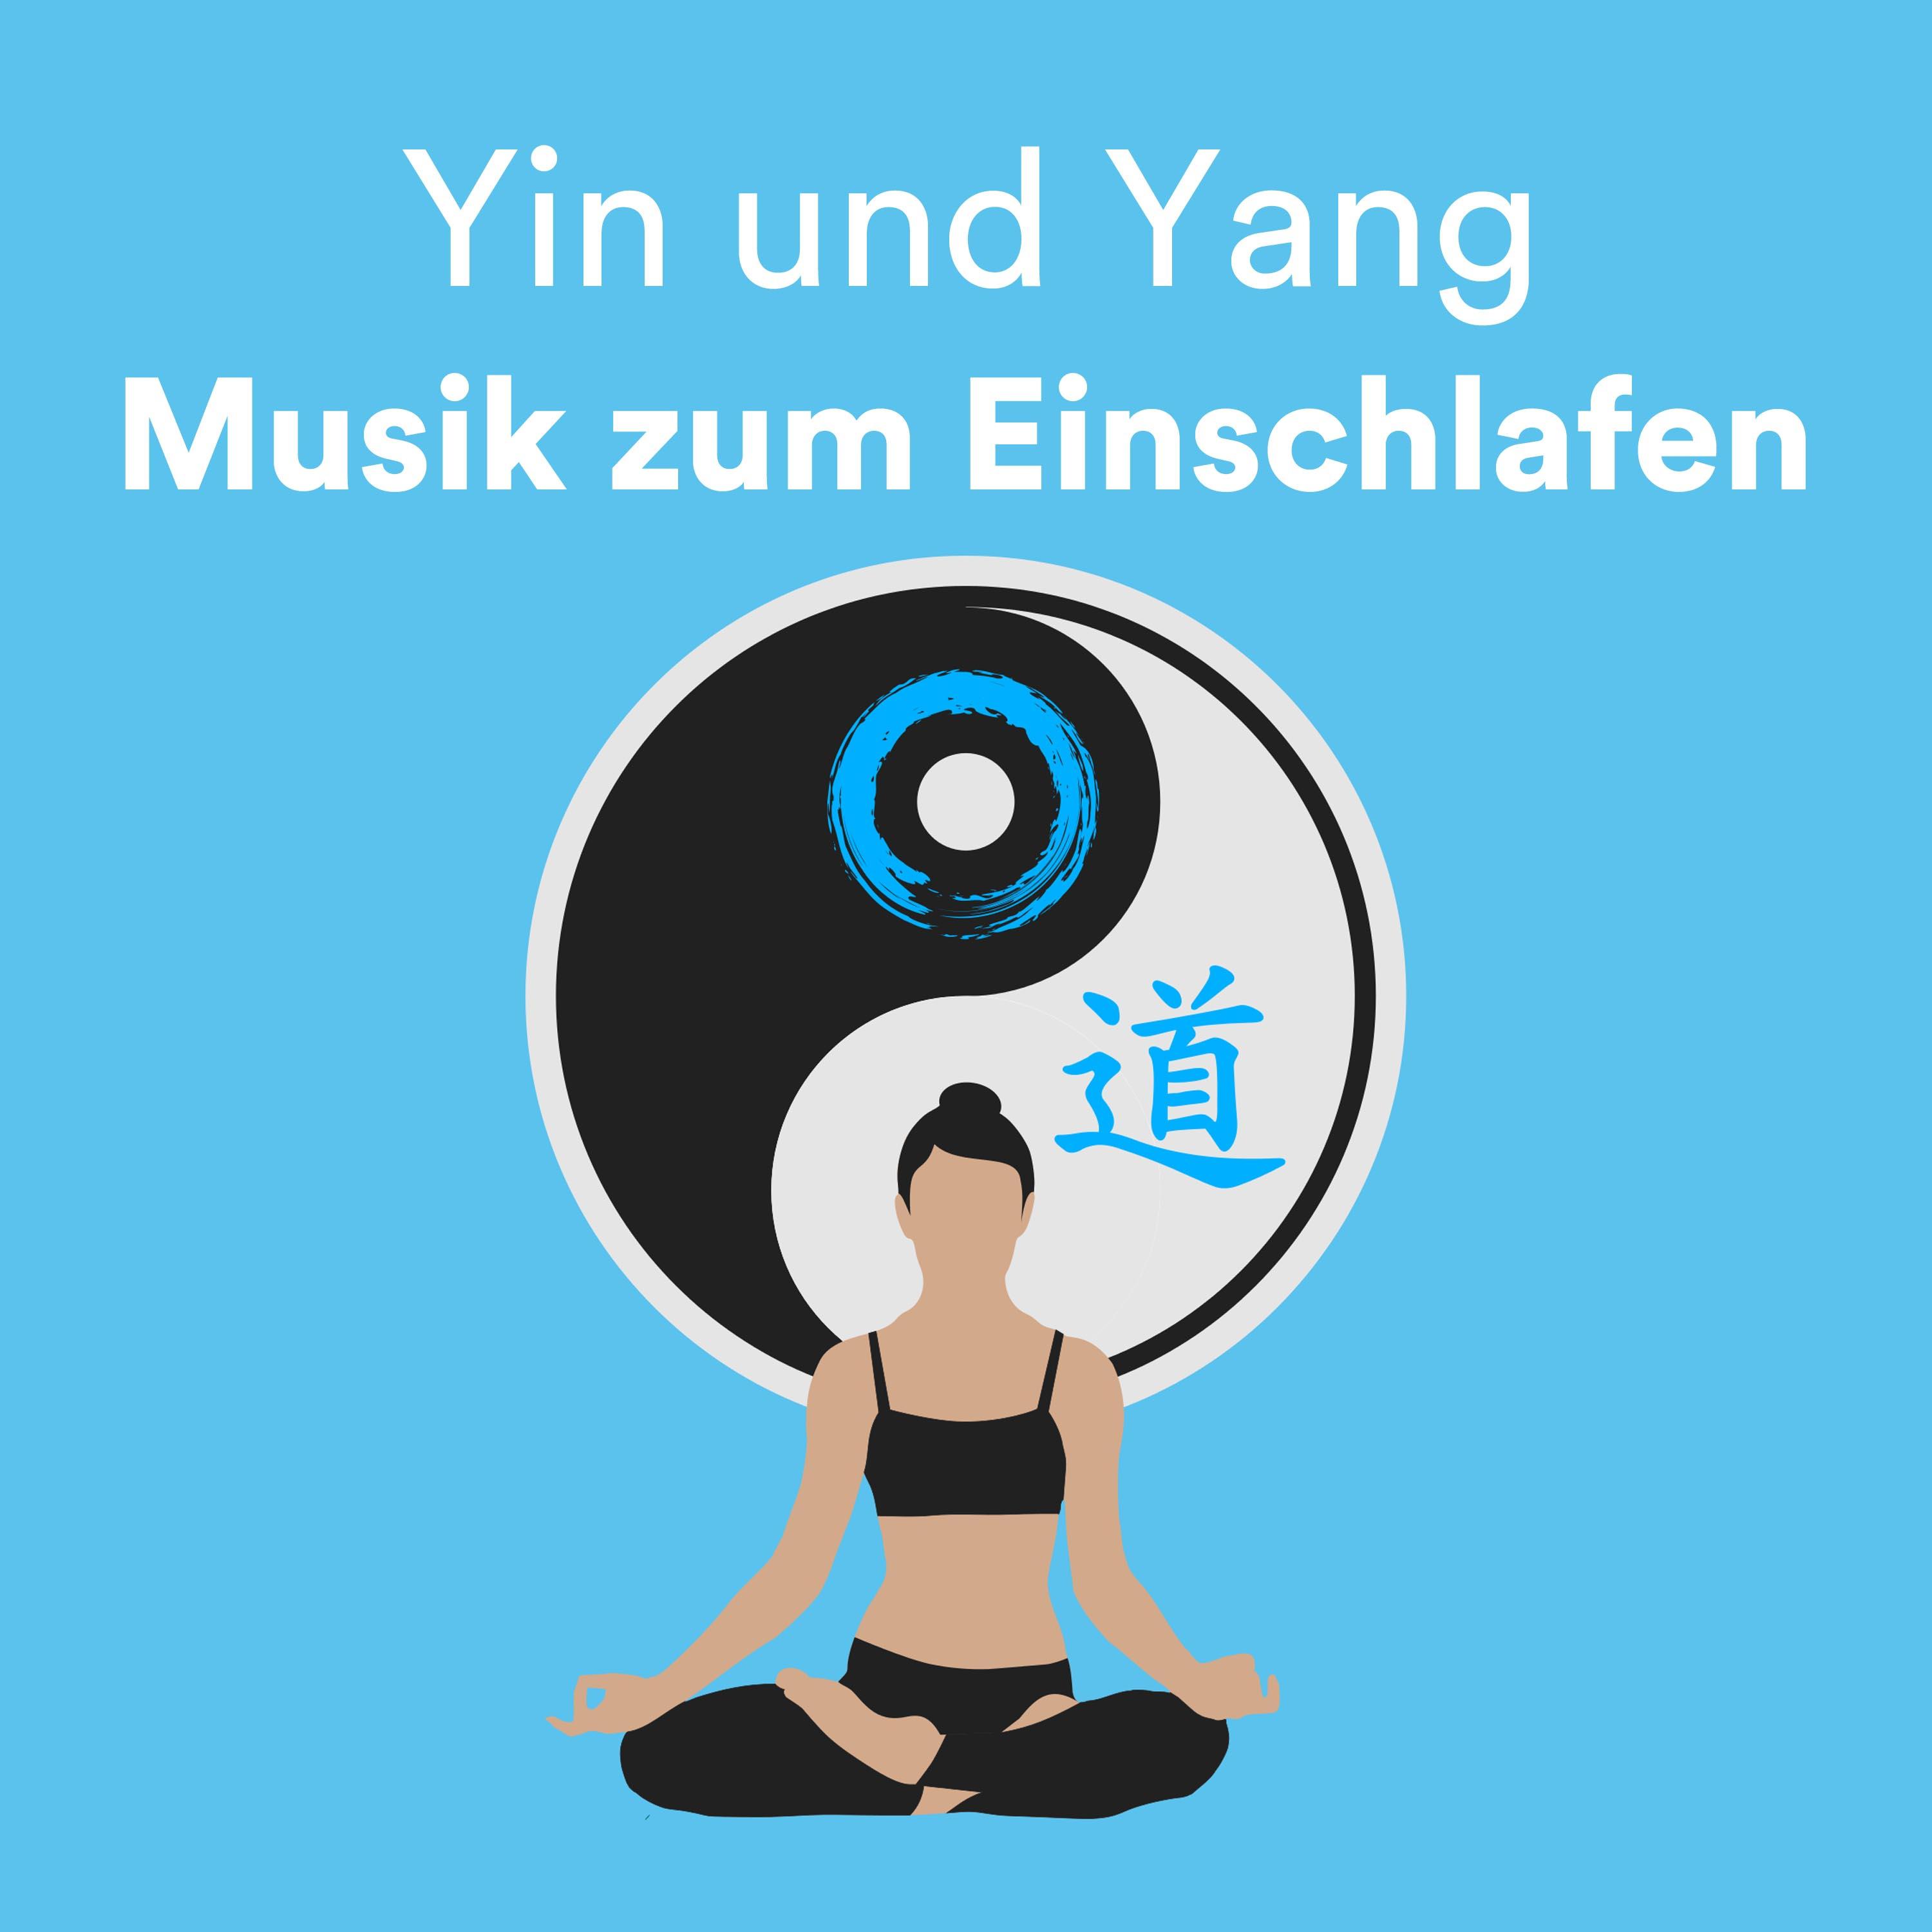 Yin und Yang: Musik zum Einschlafen